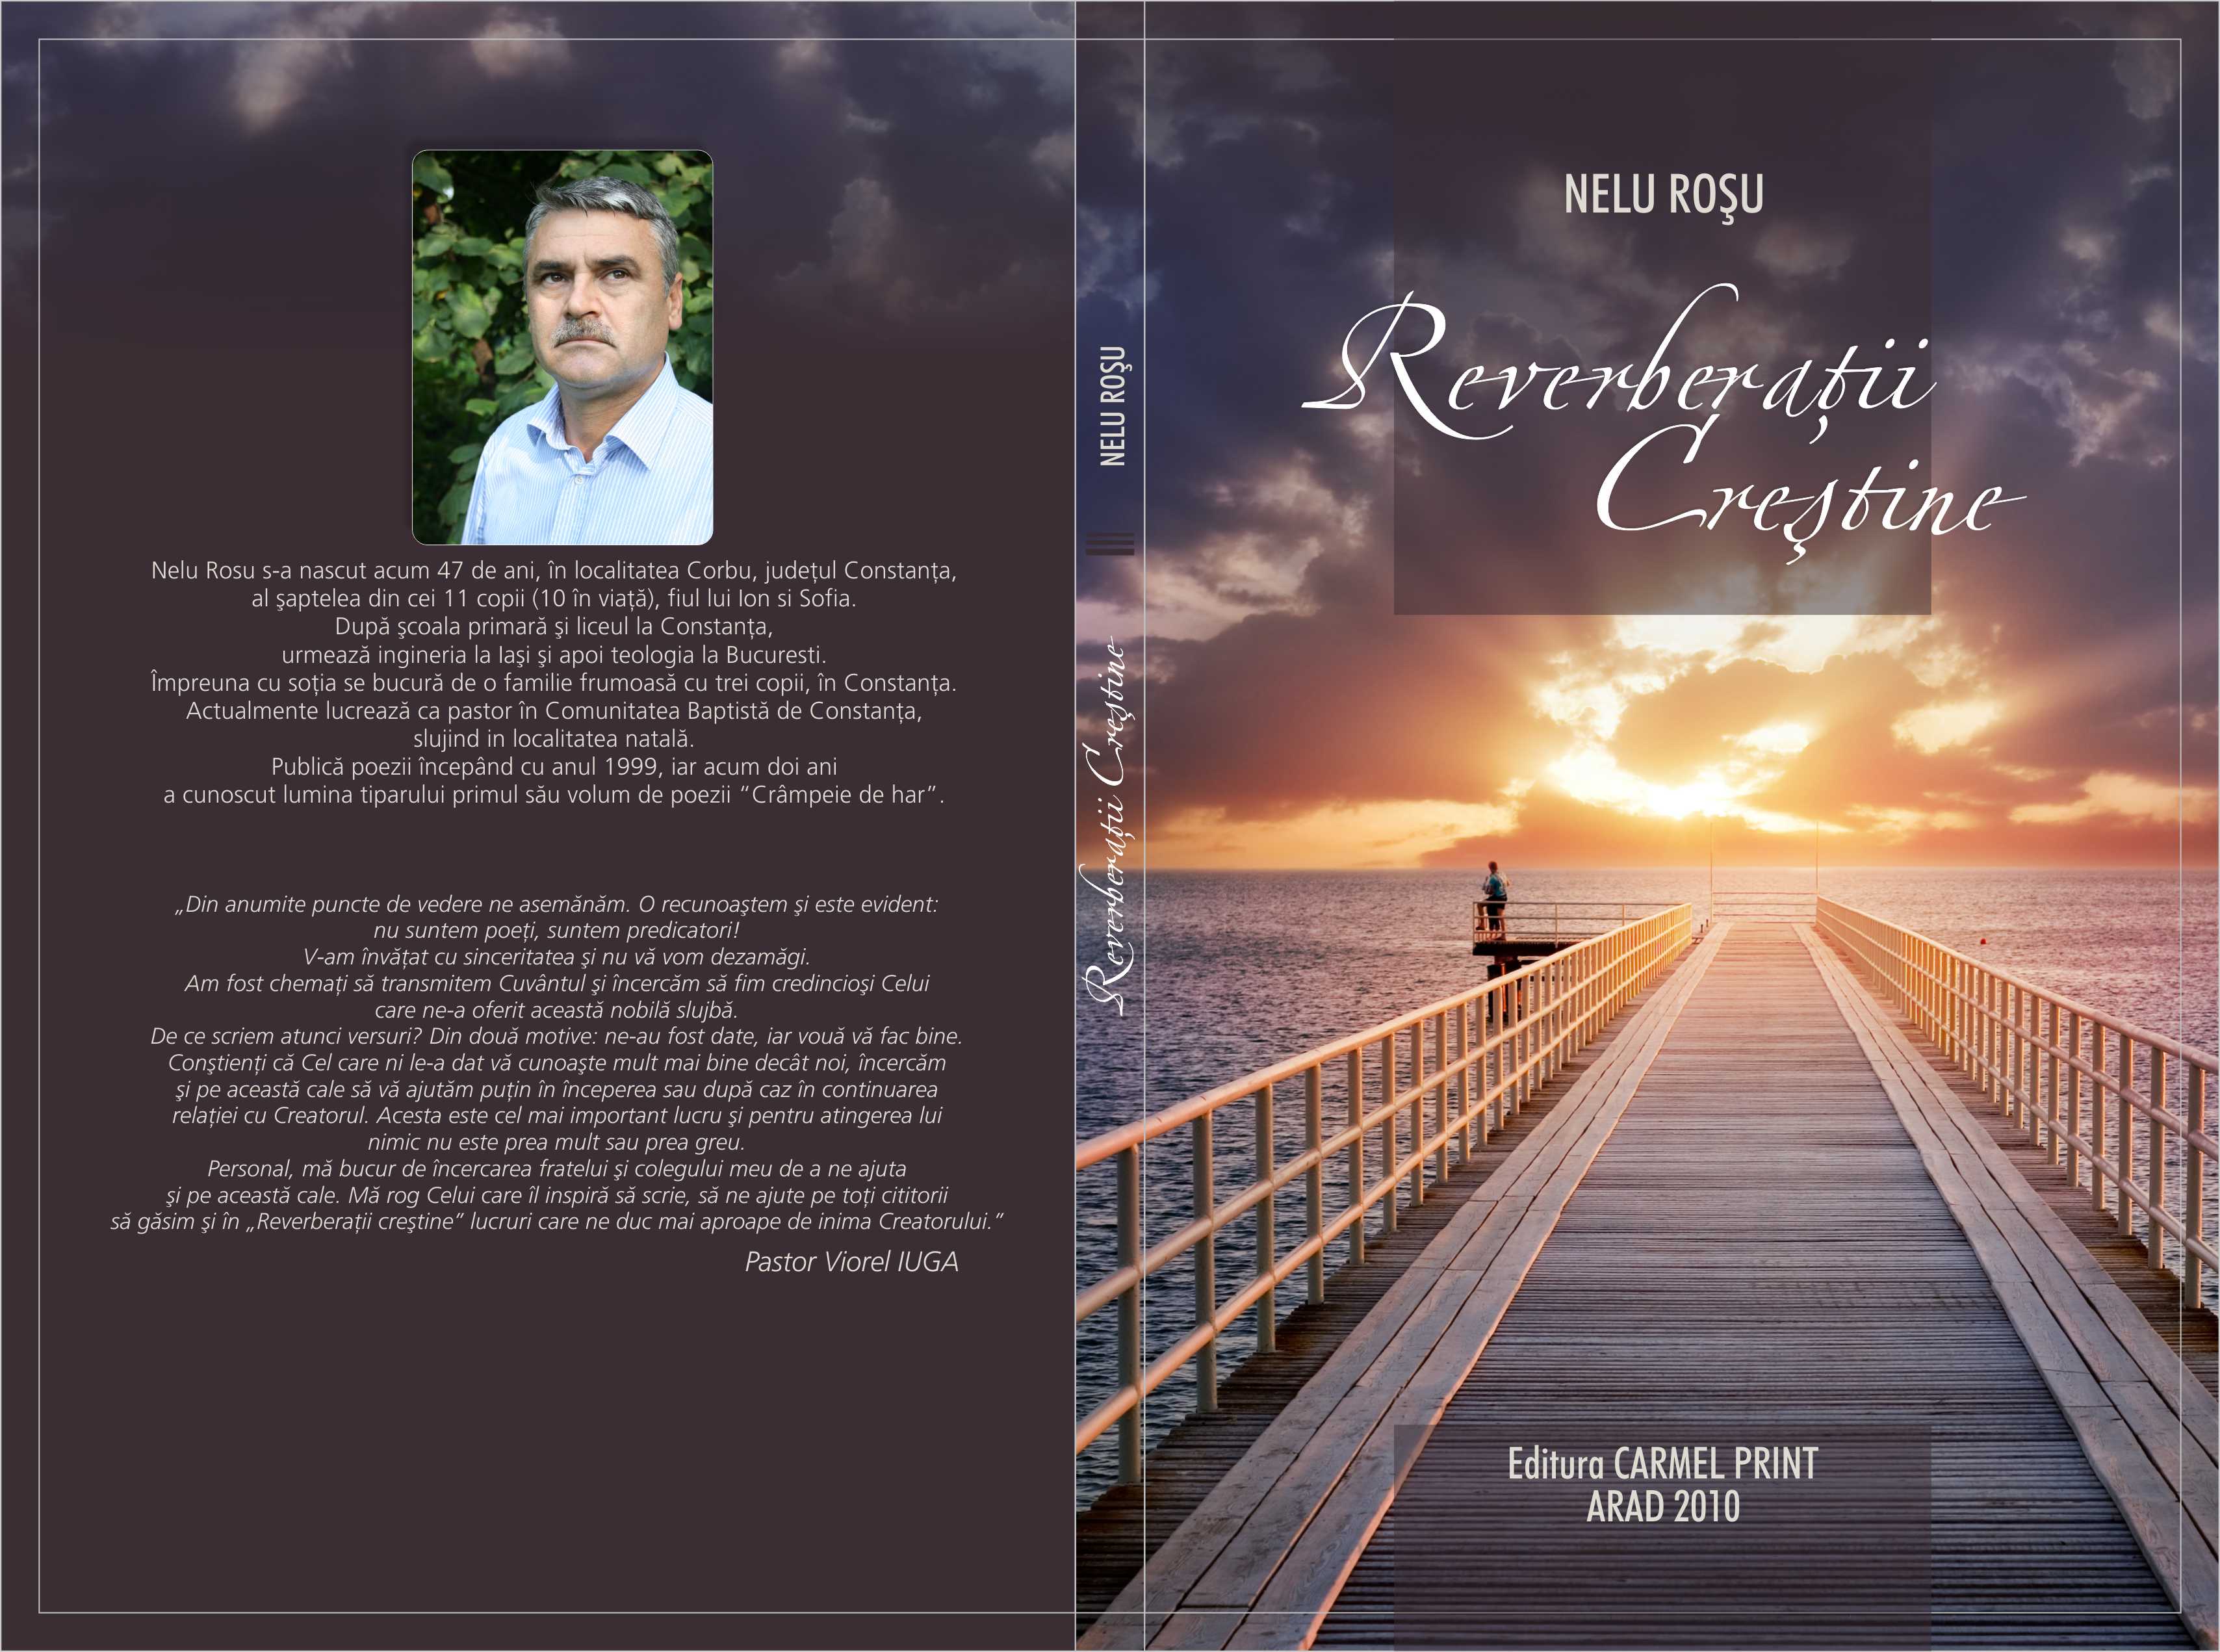 Despre noul volum de poezii "Reverberatii crestine"